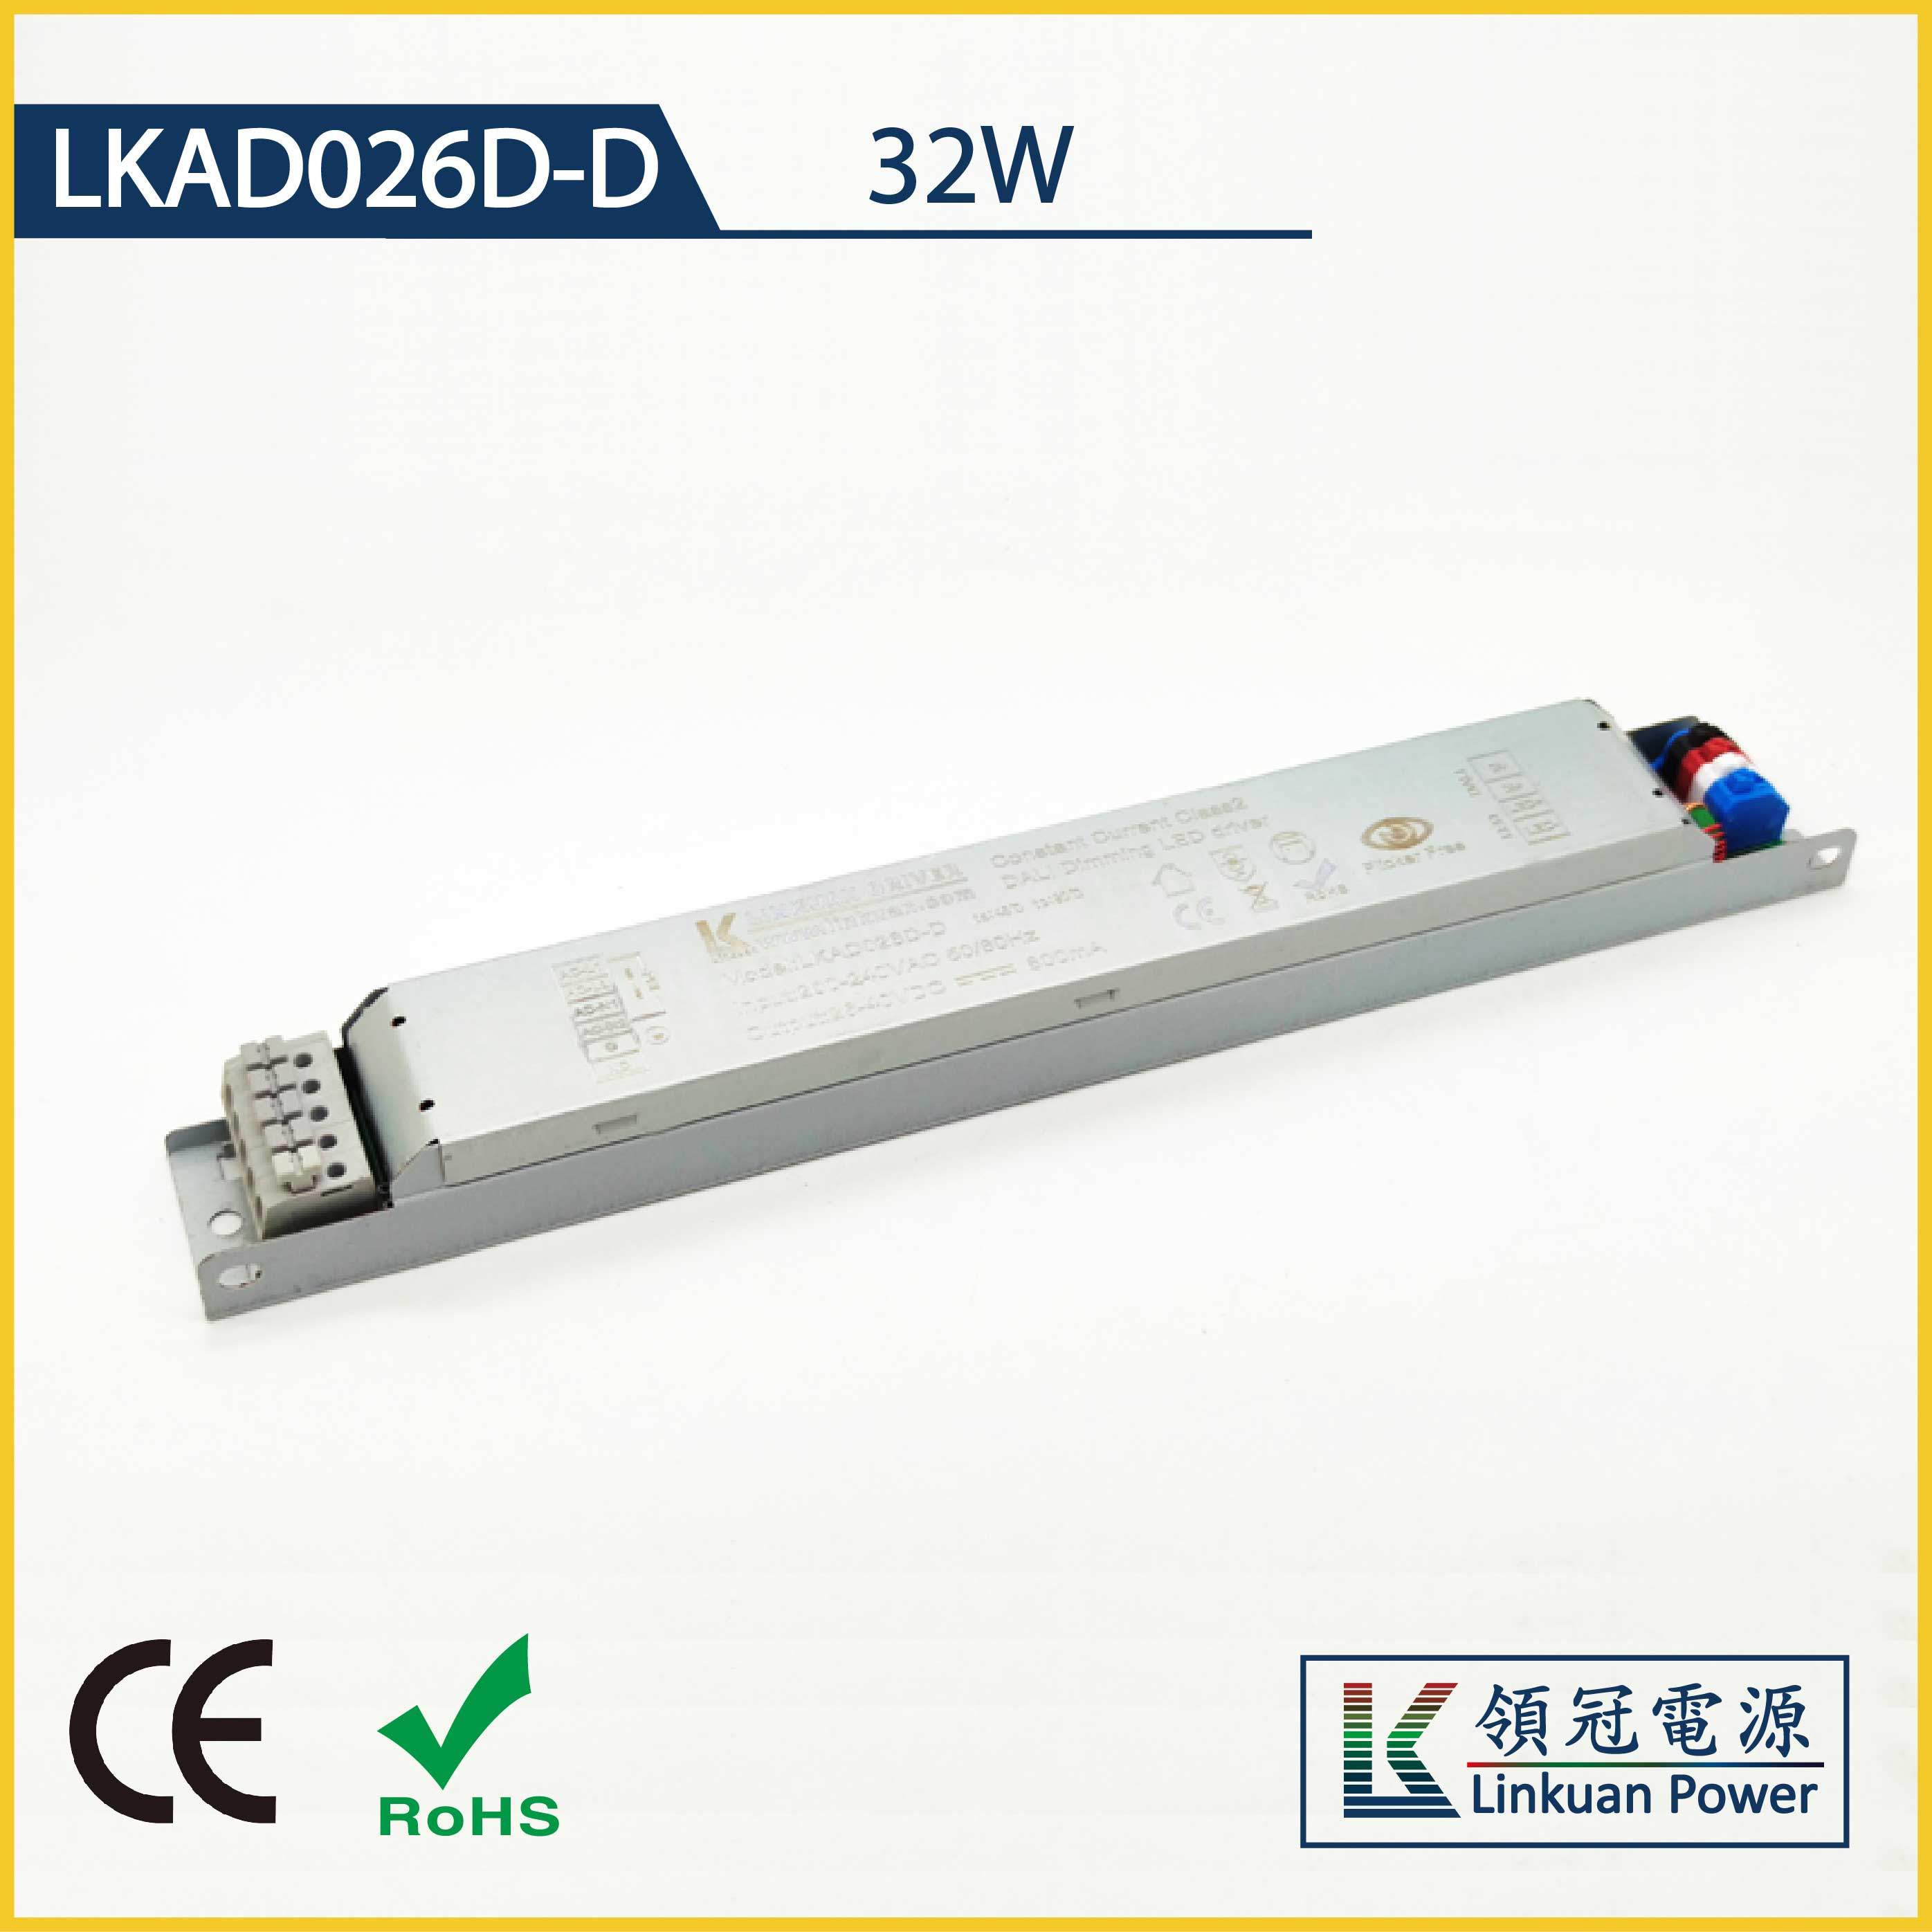 LKAD026D-D 32W 20-40V 800mA Linear Lamp DALI dimming  led driver